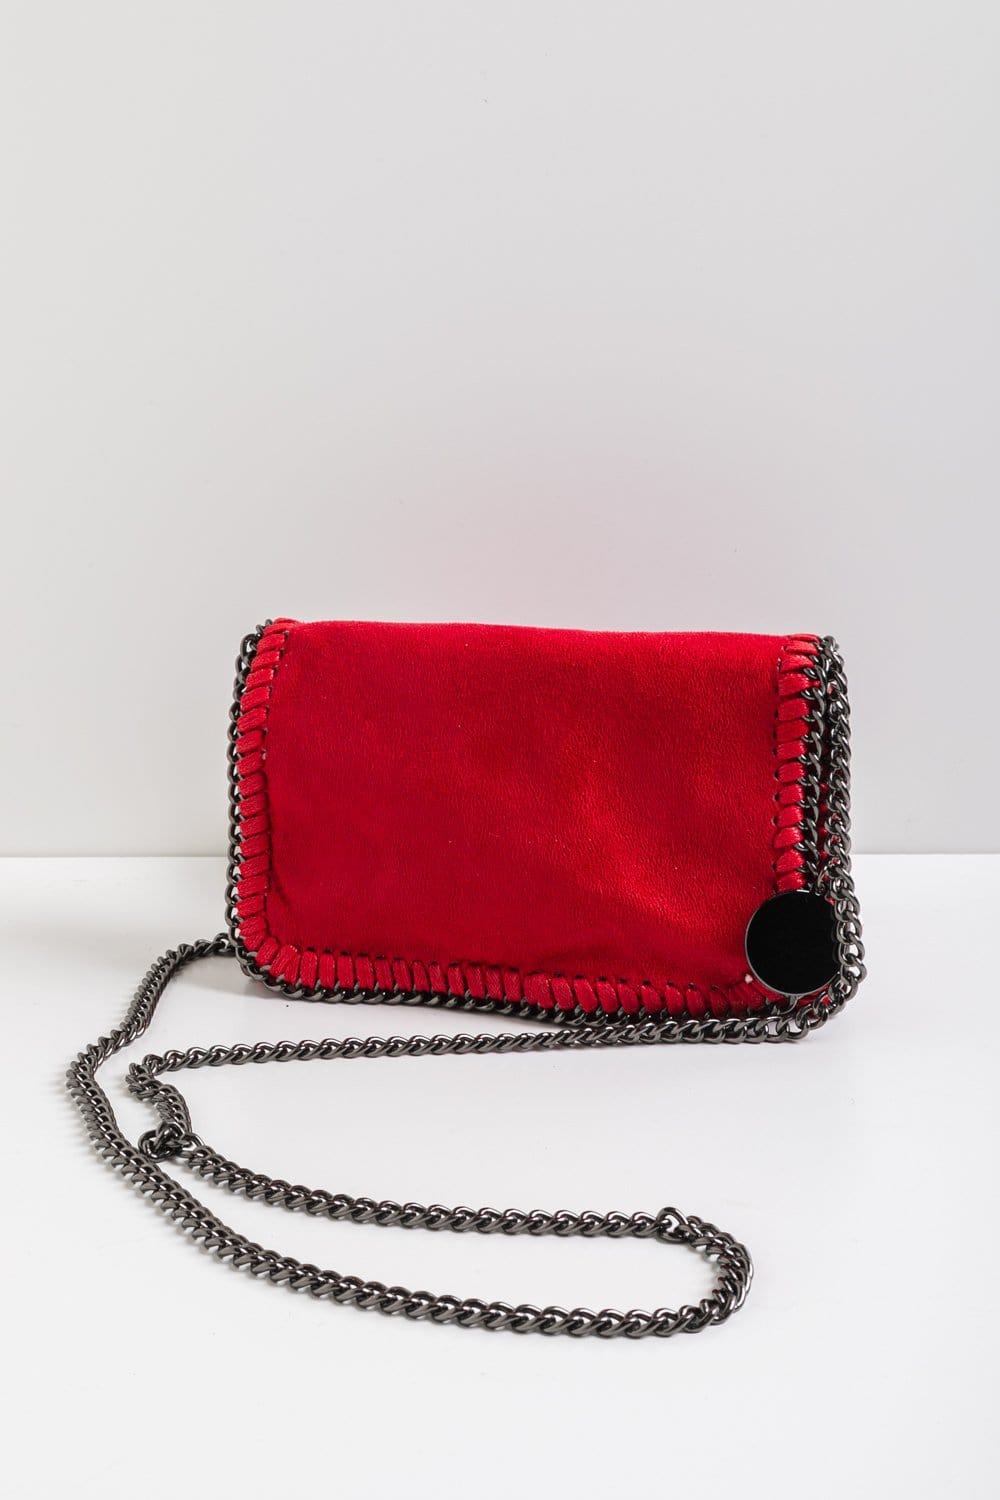 Chain Handbag